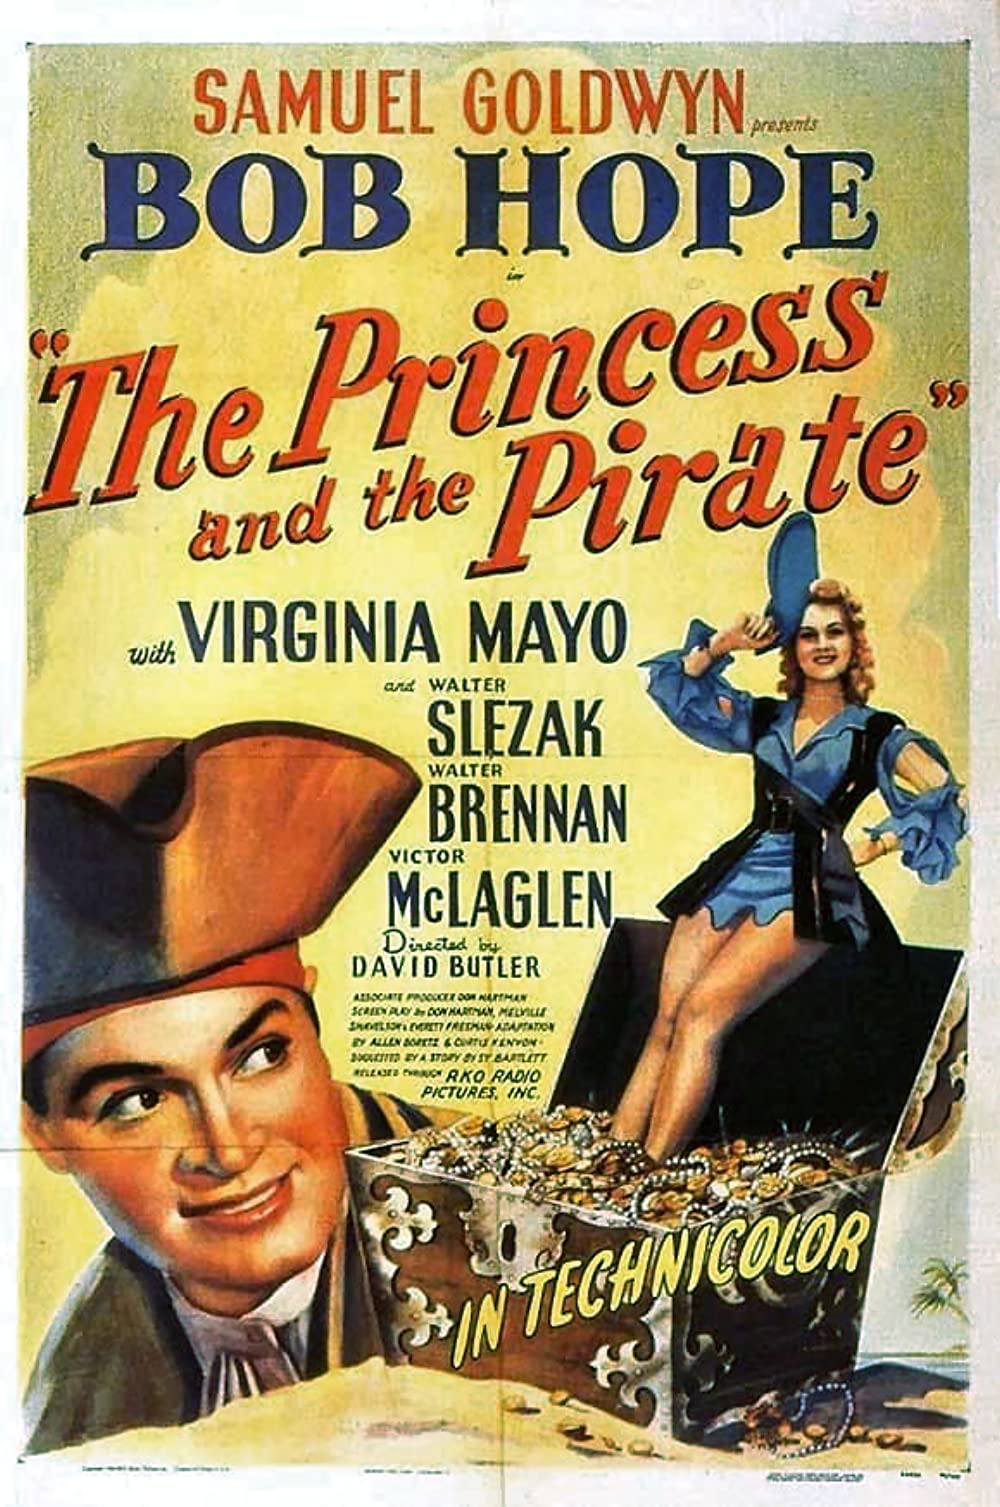 ดูหนังออนไลน์ฟรี The Princess and the Pirate (1944) เดอะ พรินซิส แอนด เดอะ ไพเรท